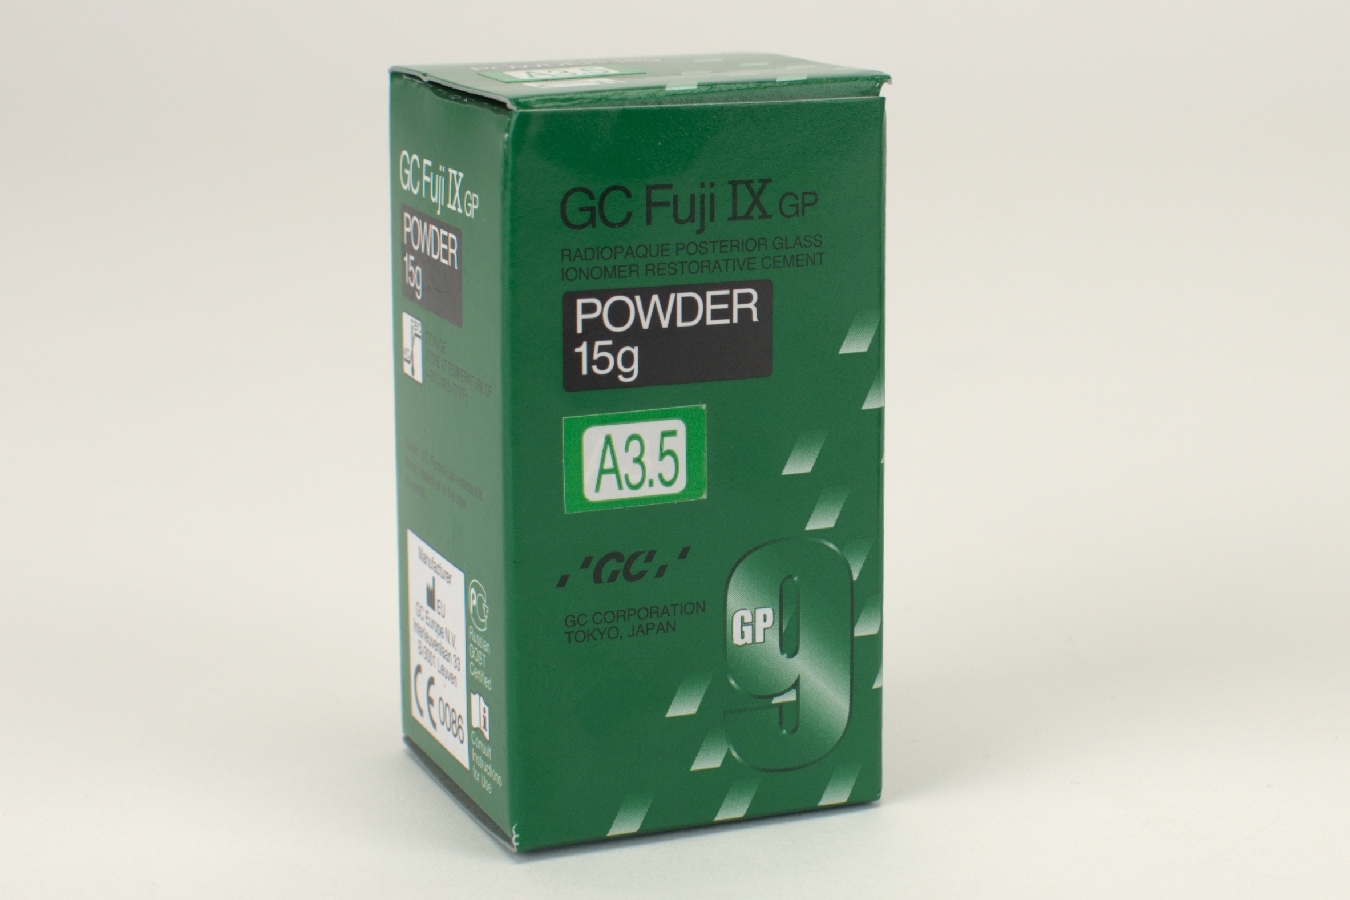 Fuji IX GP Pulver A3,5 15g